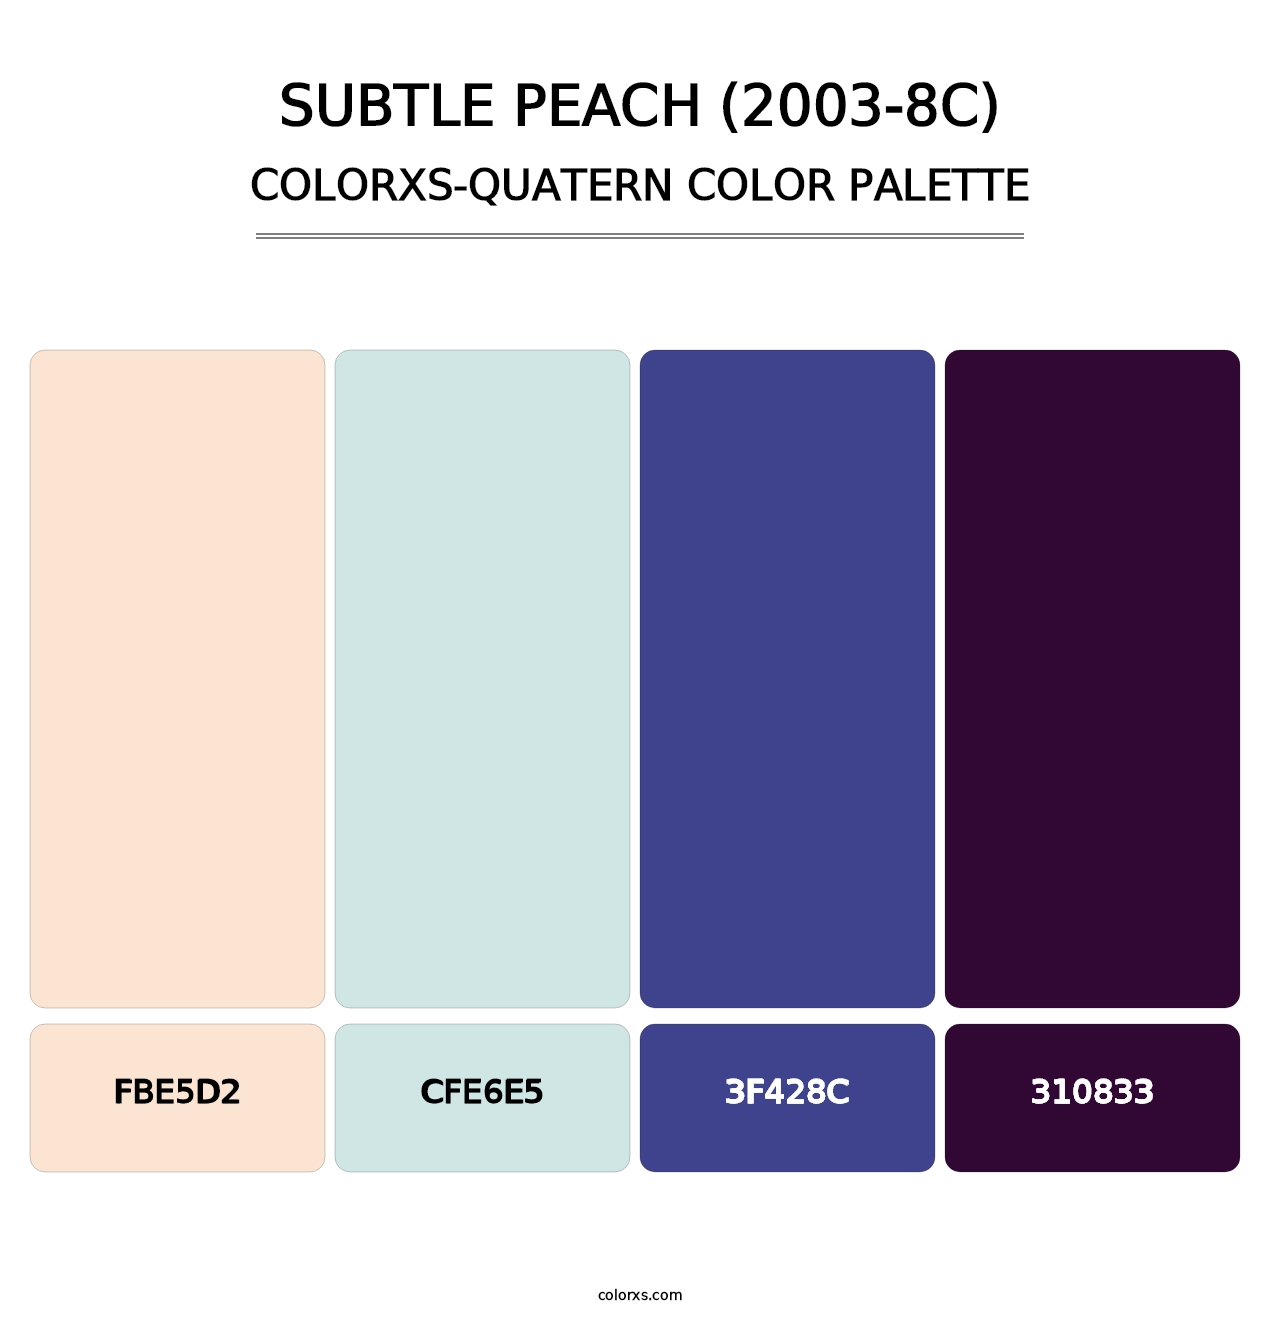 Subtle Peach (2003-8C) - Colorxs Quatern Palette